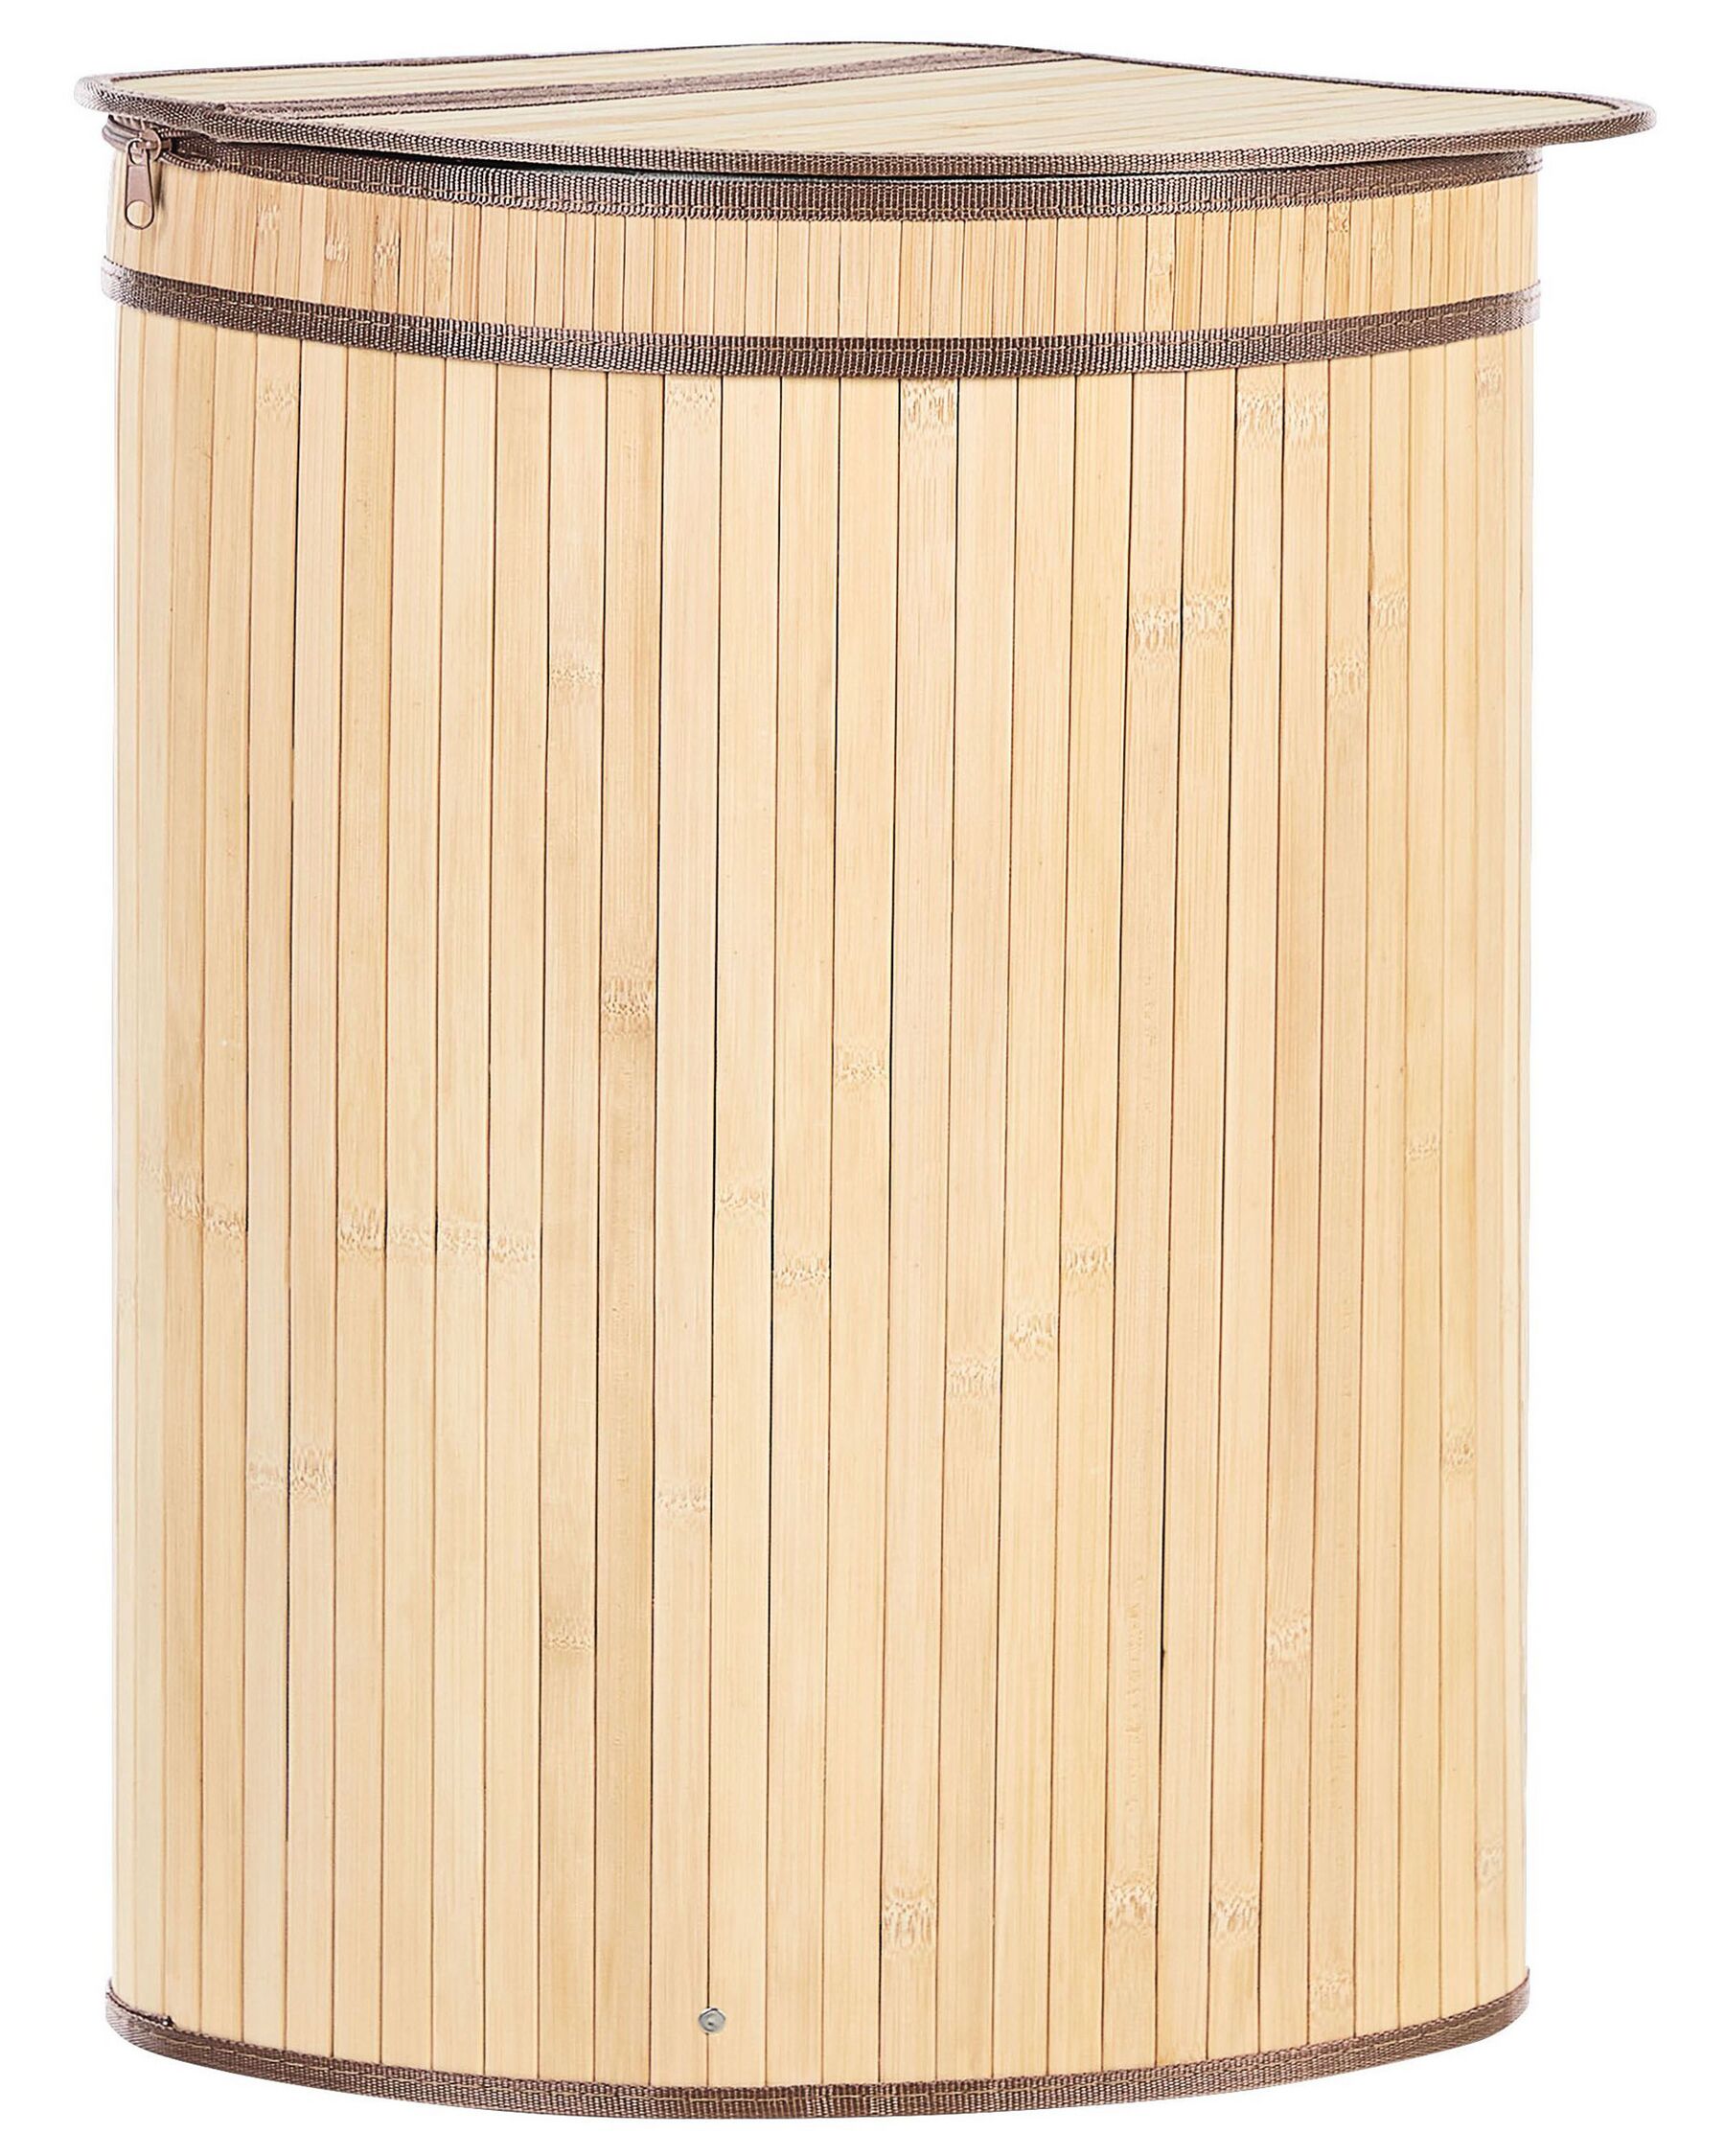 Bamboo Basket with Lid Light Wood BADULLA_849187